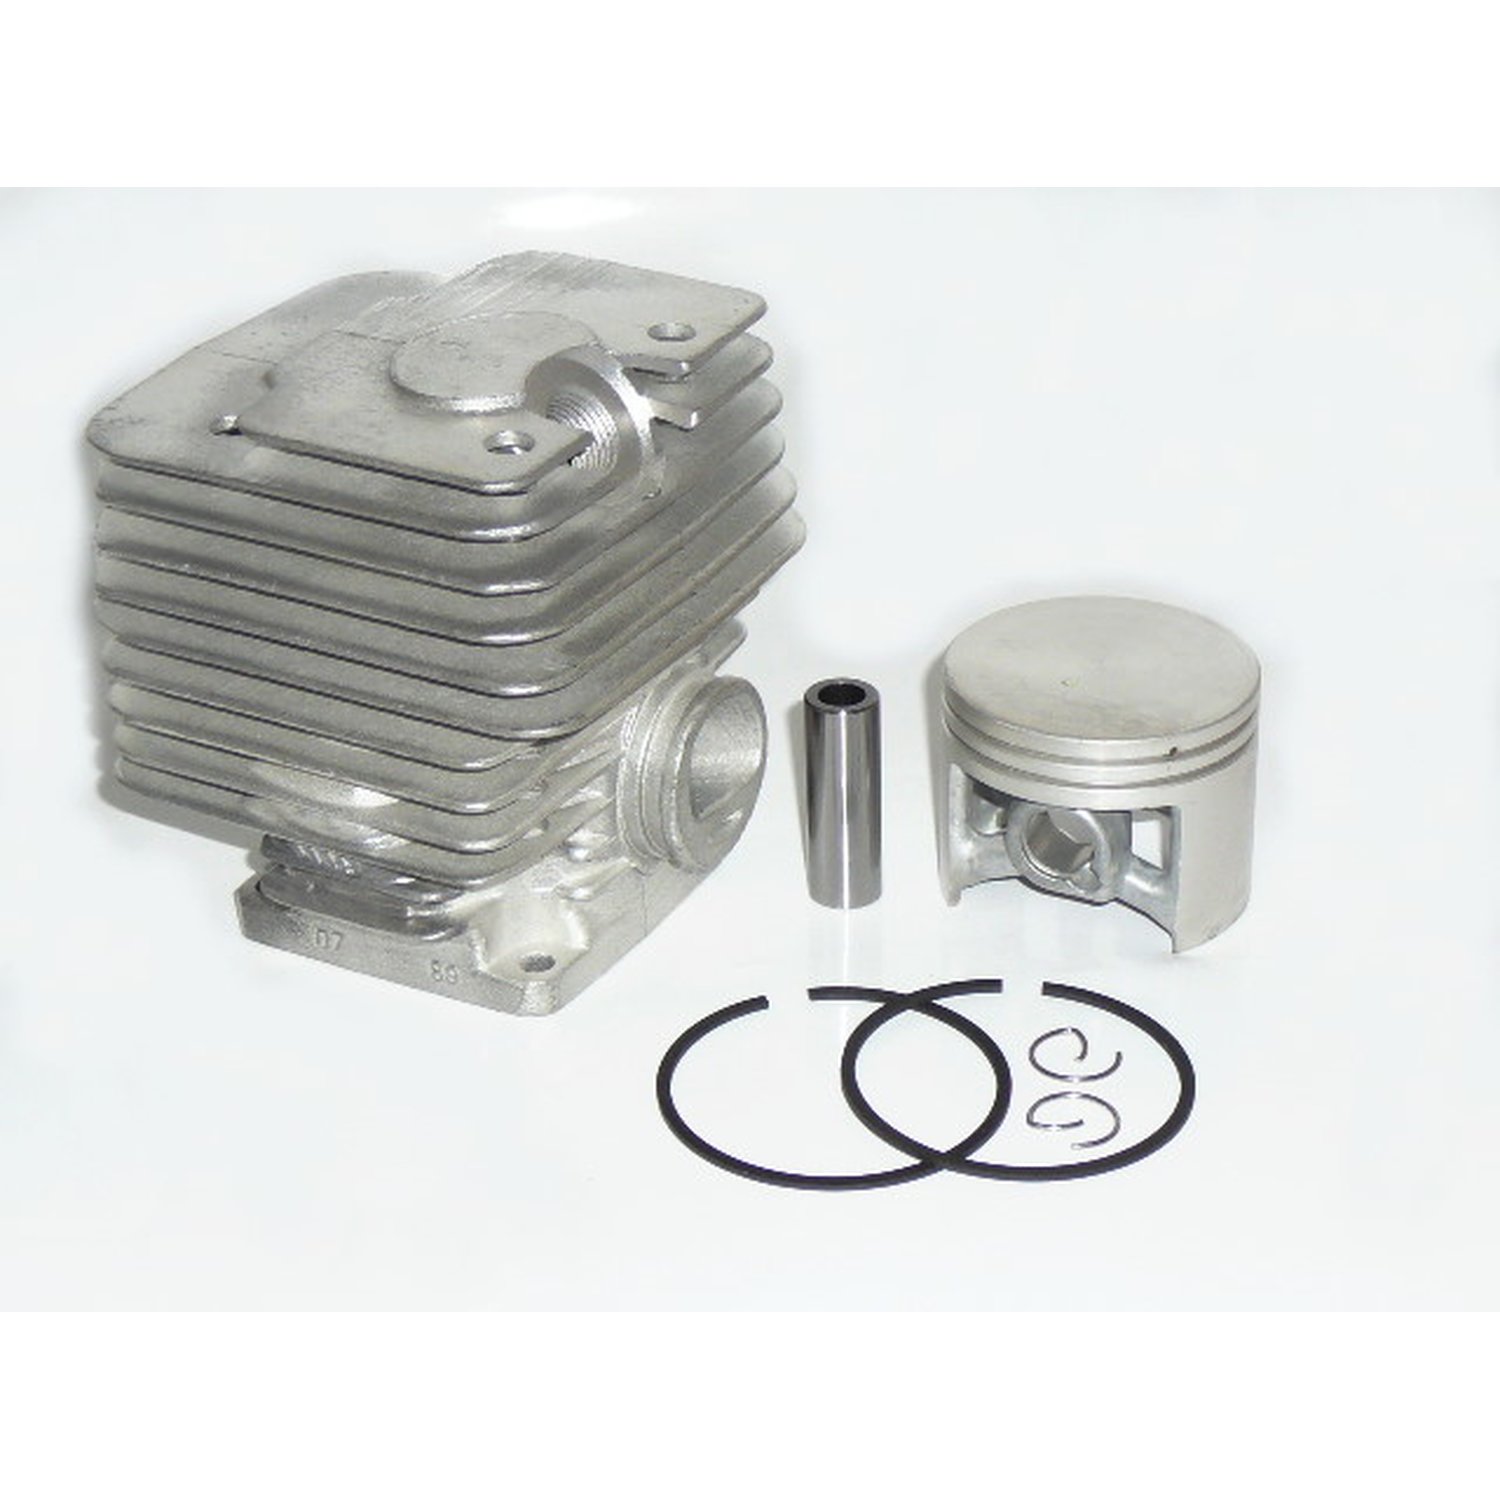 Dichtsatz cylinder kit Zylinder Kolben Set passend für Stihl 070 66 mm inkl 